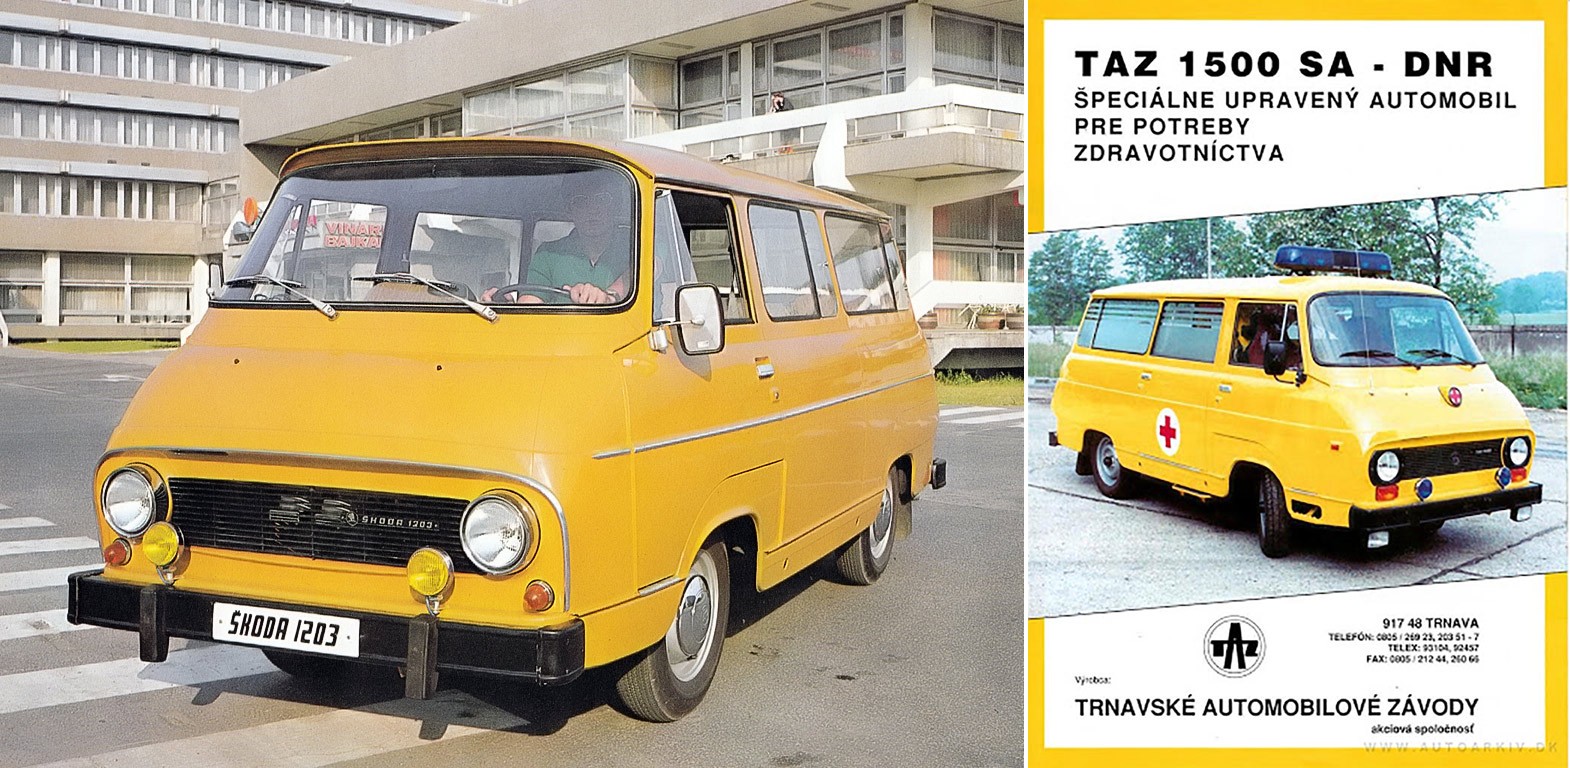 Дрндичка, BAZ и TAZ: история автопрома Словакии, о котором вы ничего не знаете